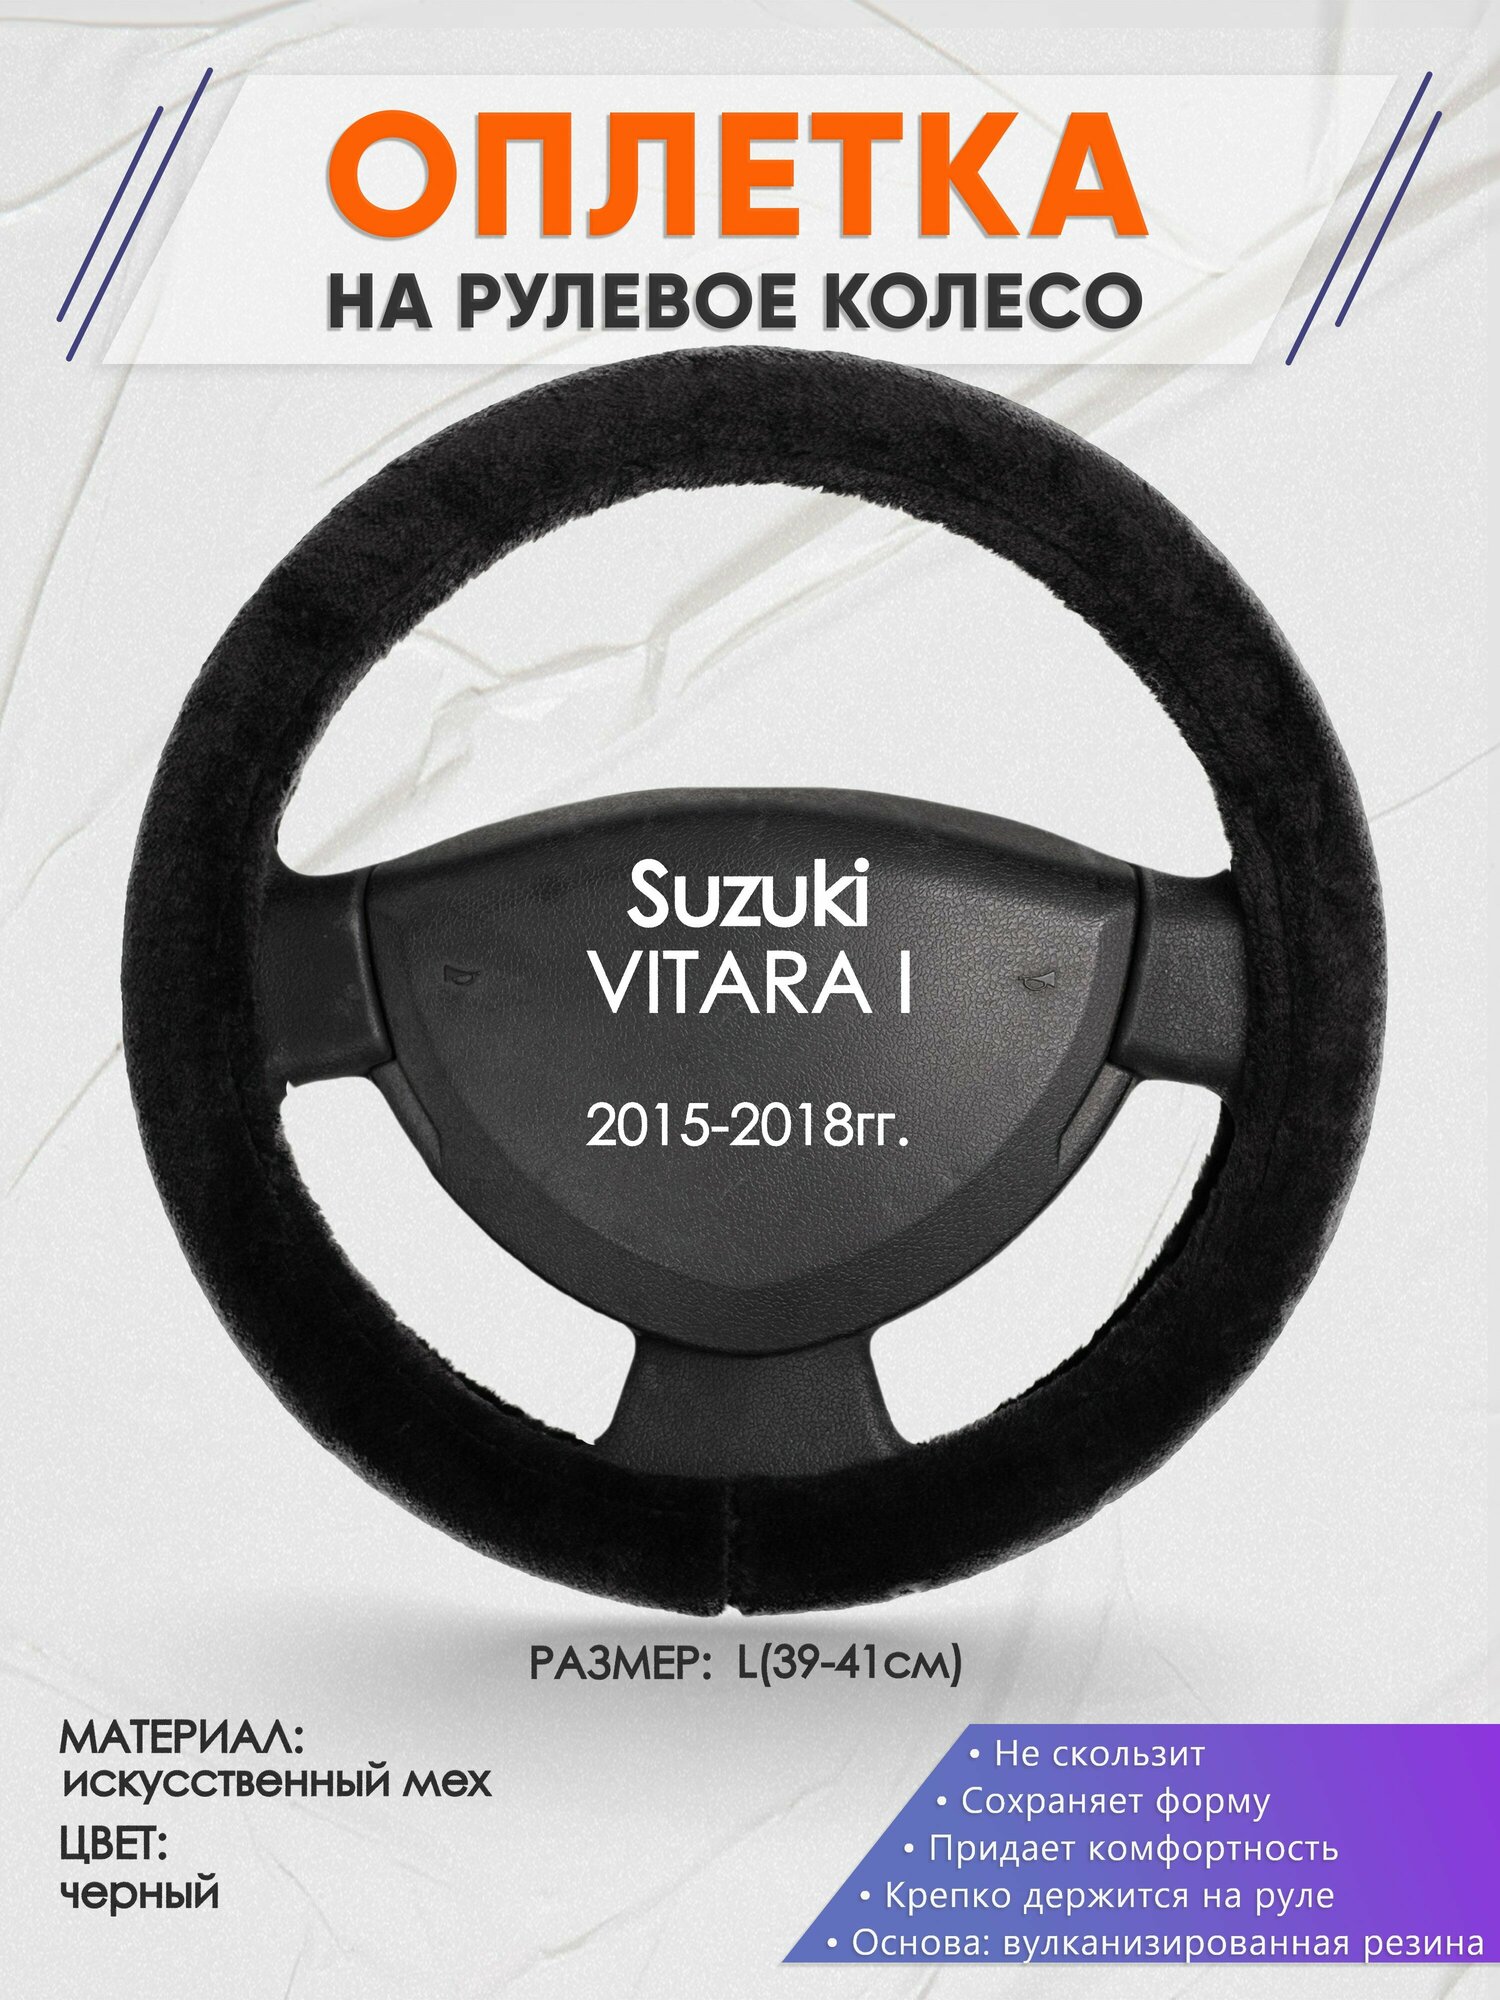 Оплетка на руль для Suzuki VITARA I(Сузуки Витара 1) 2015-2018, L(39-41см), Искусственный мех 45